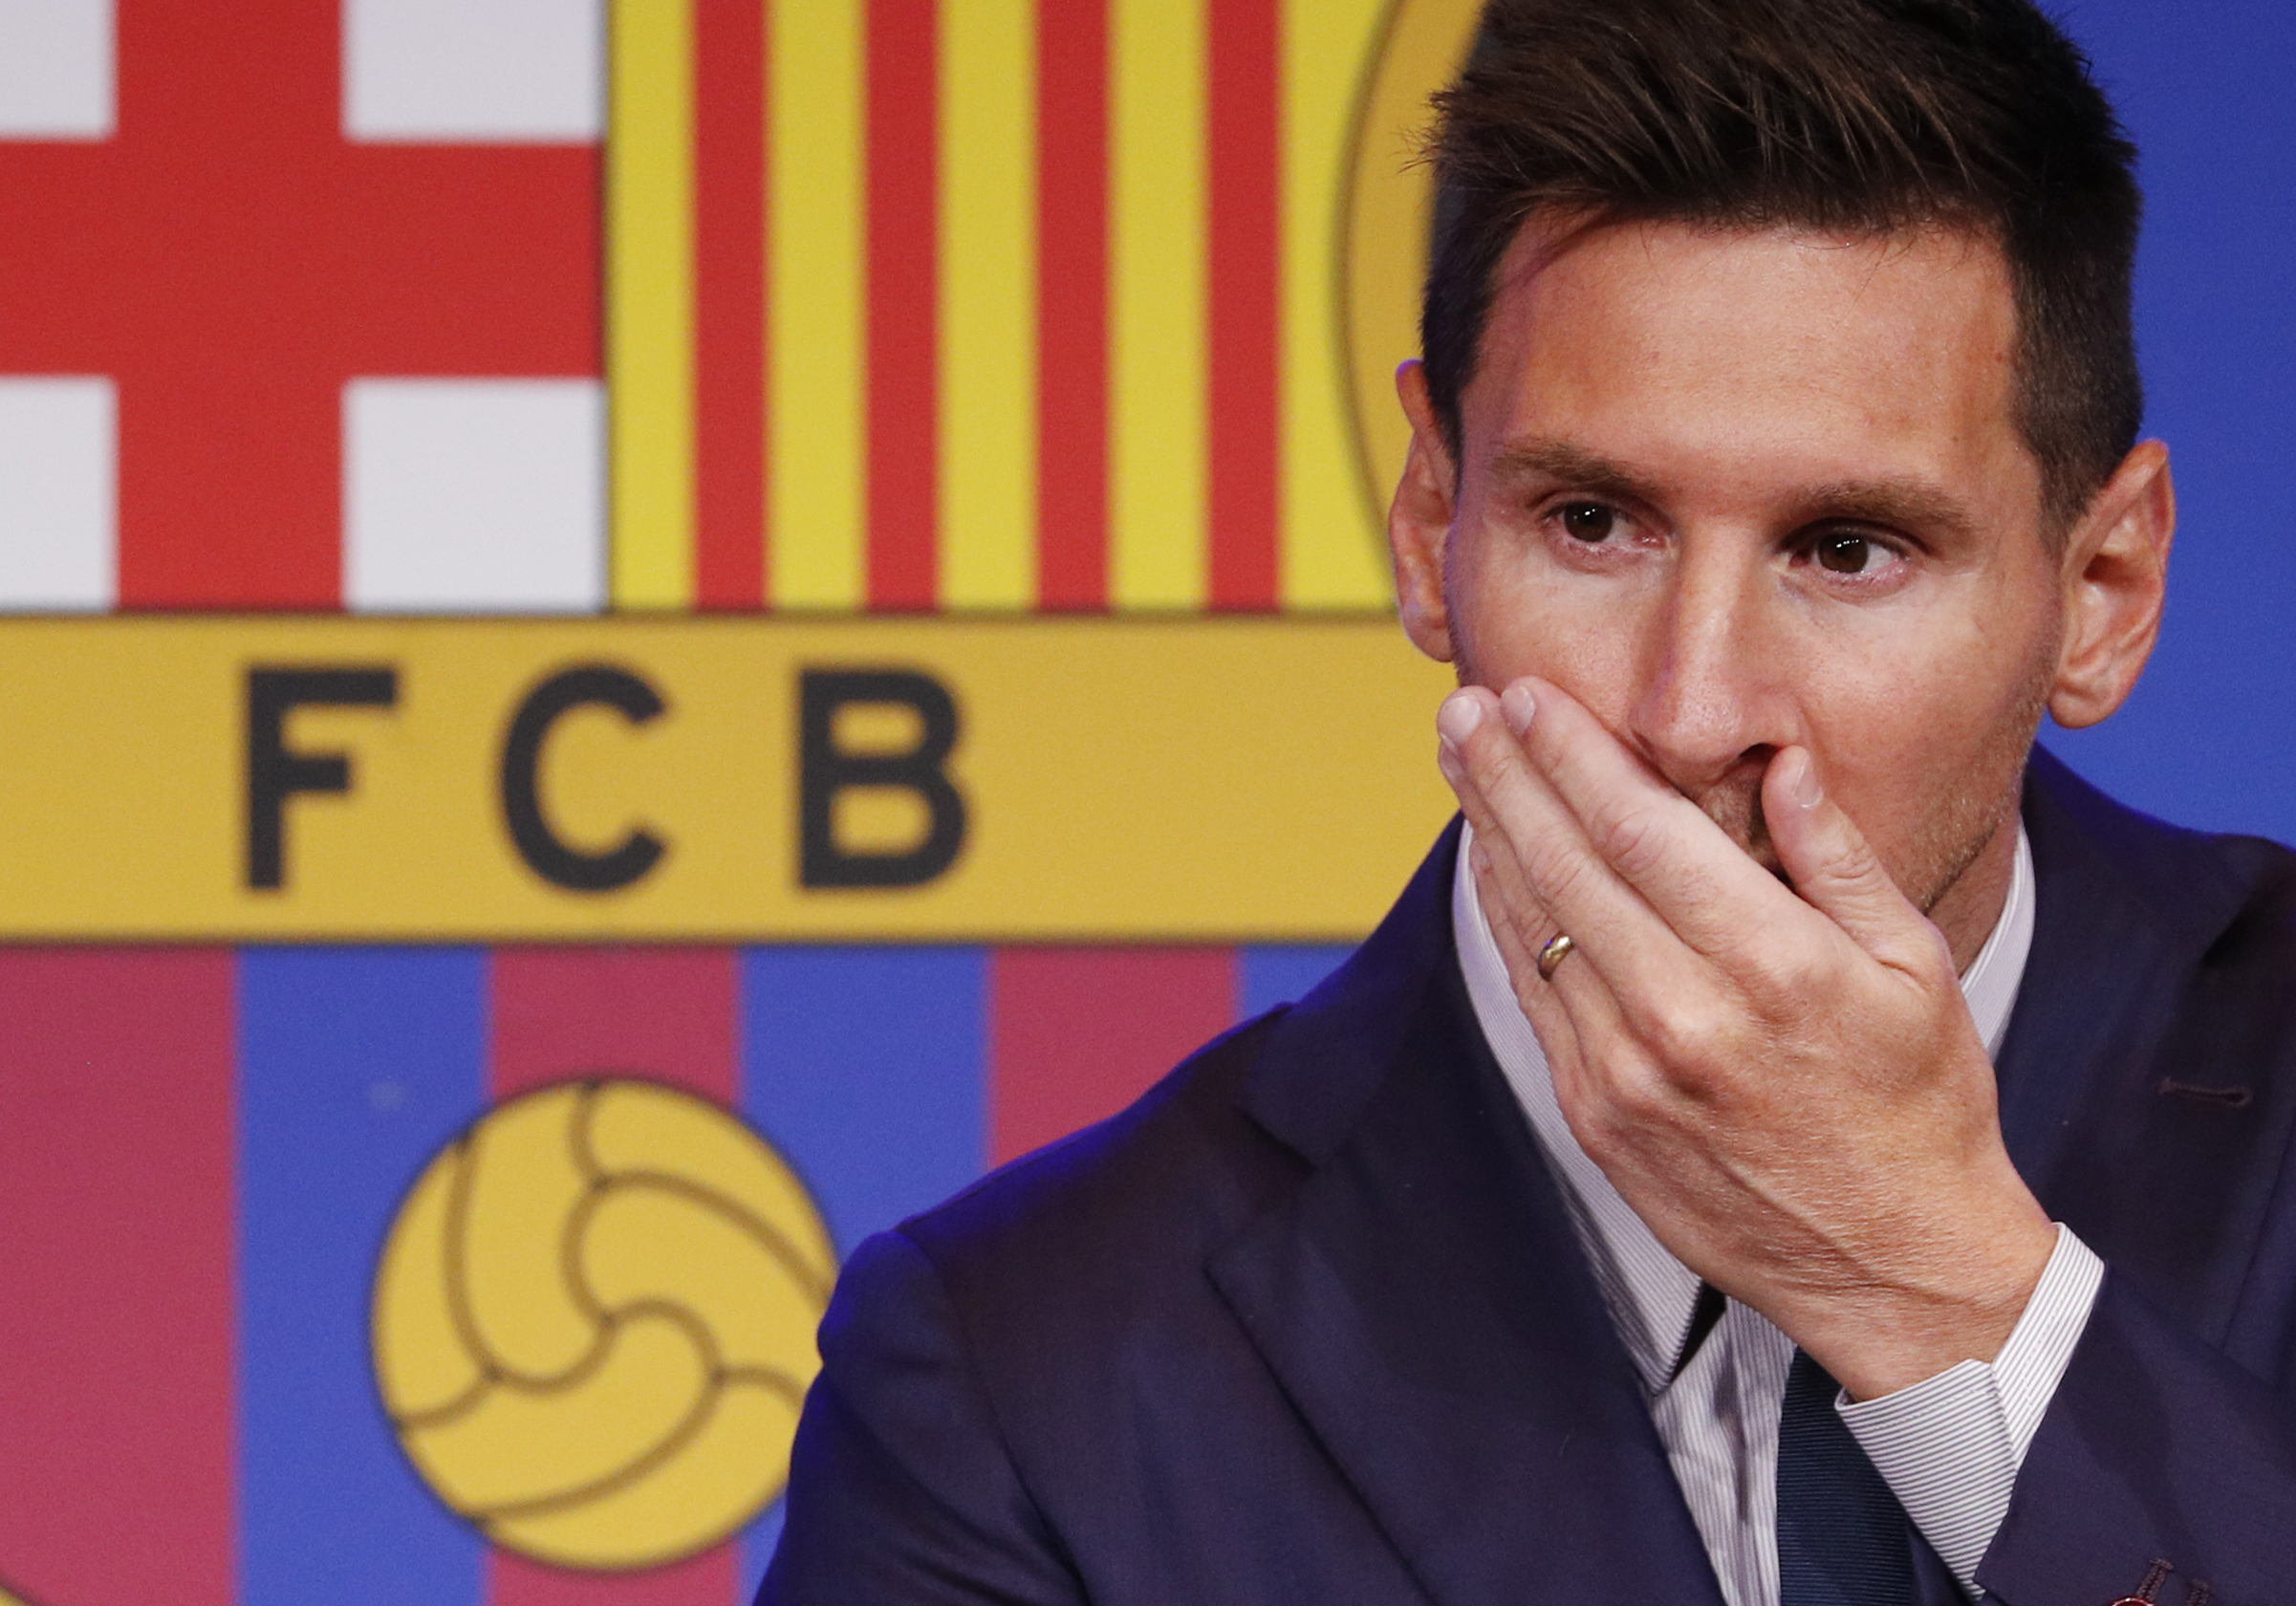 Messi à Paris: pourquoi le PSG pense réussir là où le Barça a échoué